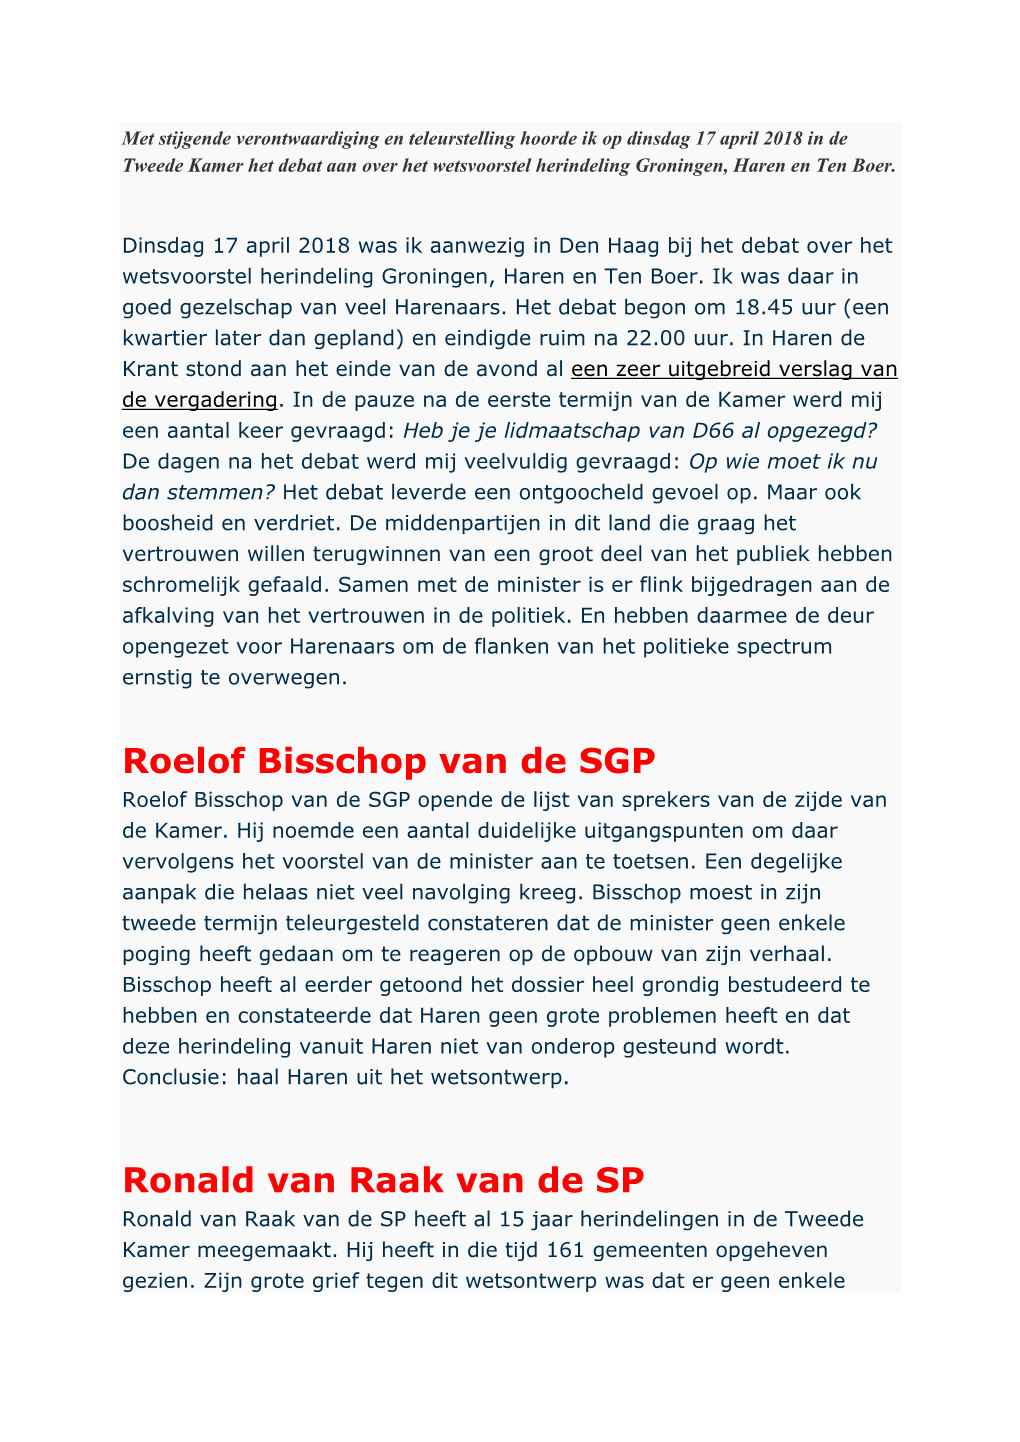 Roelof Bisschop Van De SGP Ronald Van Raak Van De SP